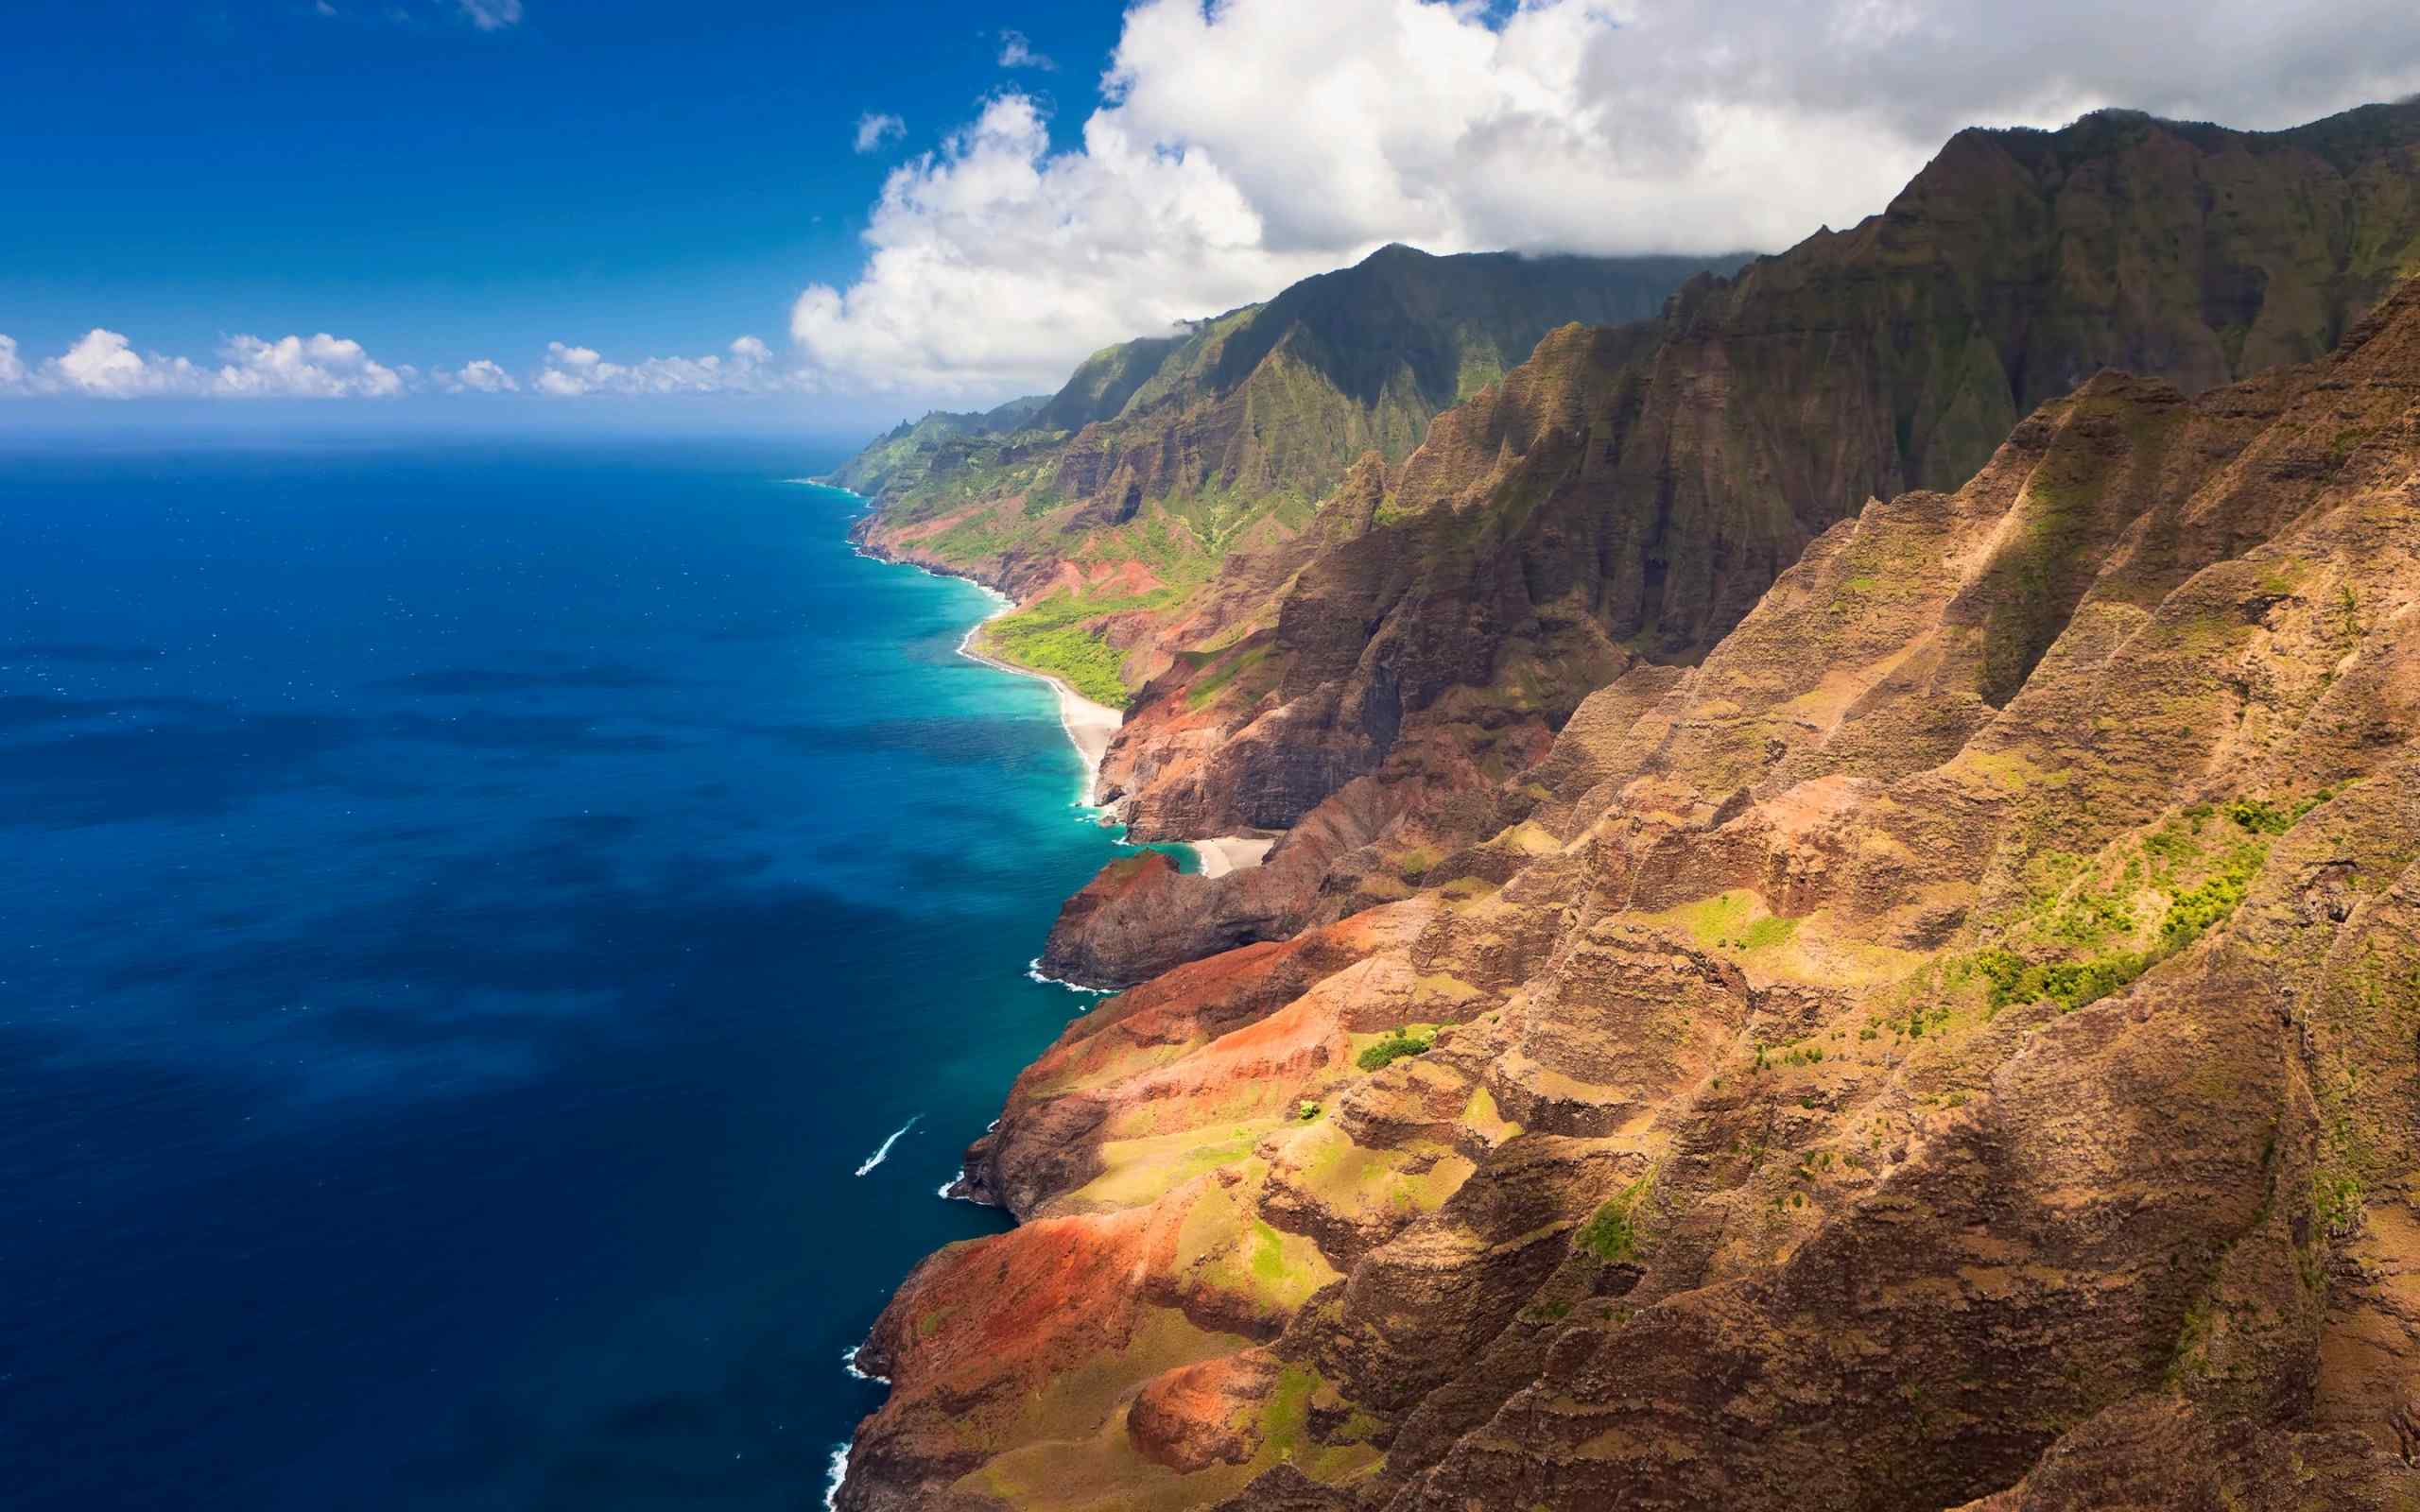 夏威夷海岛旅游风景桌面壁纸 第二辑